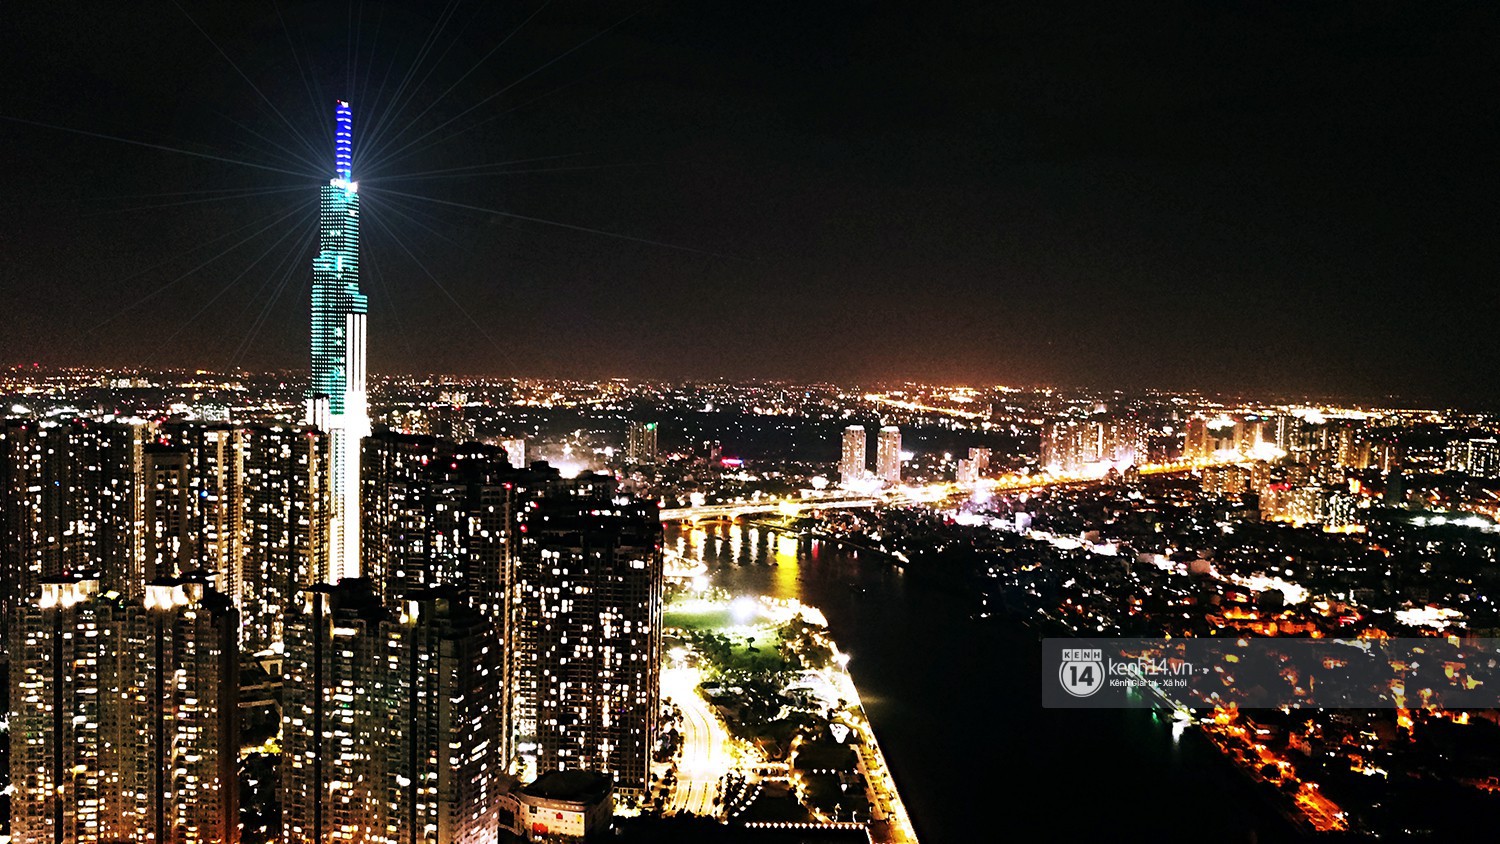 Chùm ảnh: Toàn cảnh tòa nhà 81 tầng cao nhất Việt Nam ngay trước ngày khai trương ở Sài Gòn - Ảnh 8.